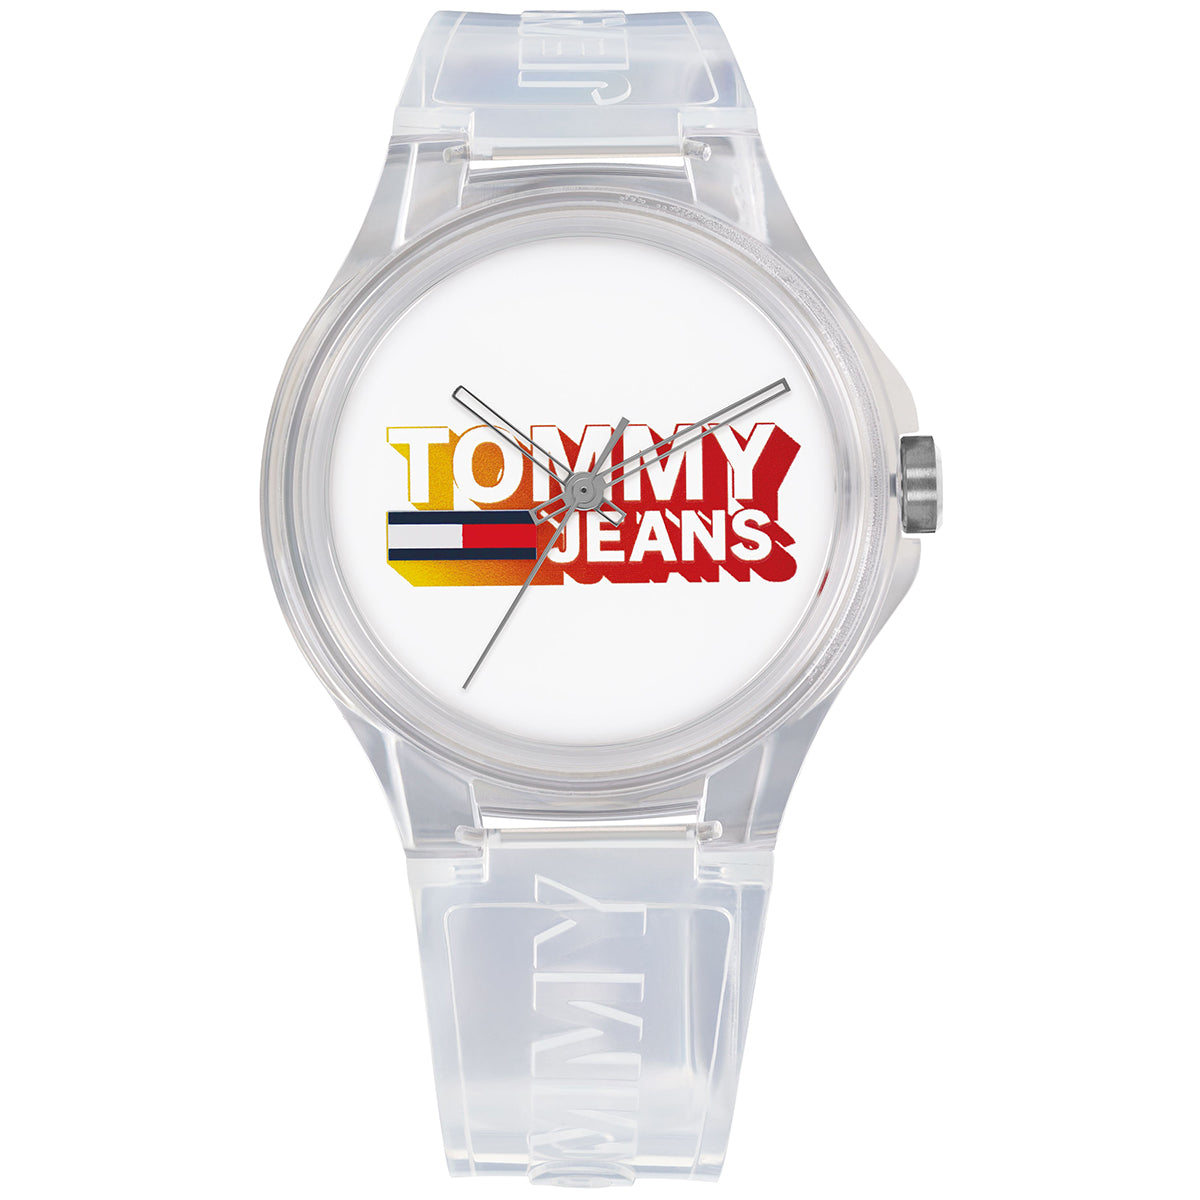 Tommy Jeans - Berlin - 172.0027